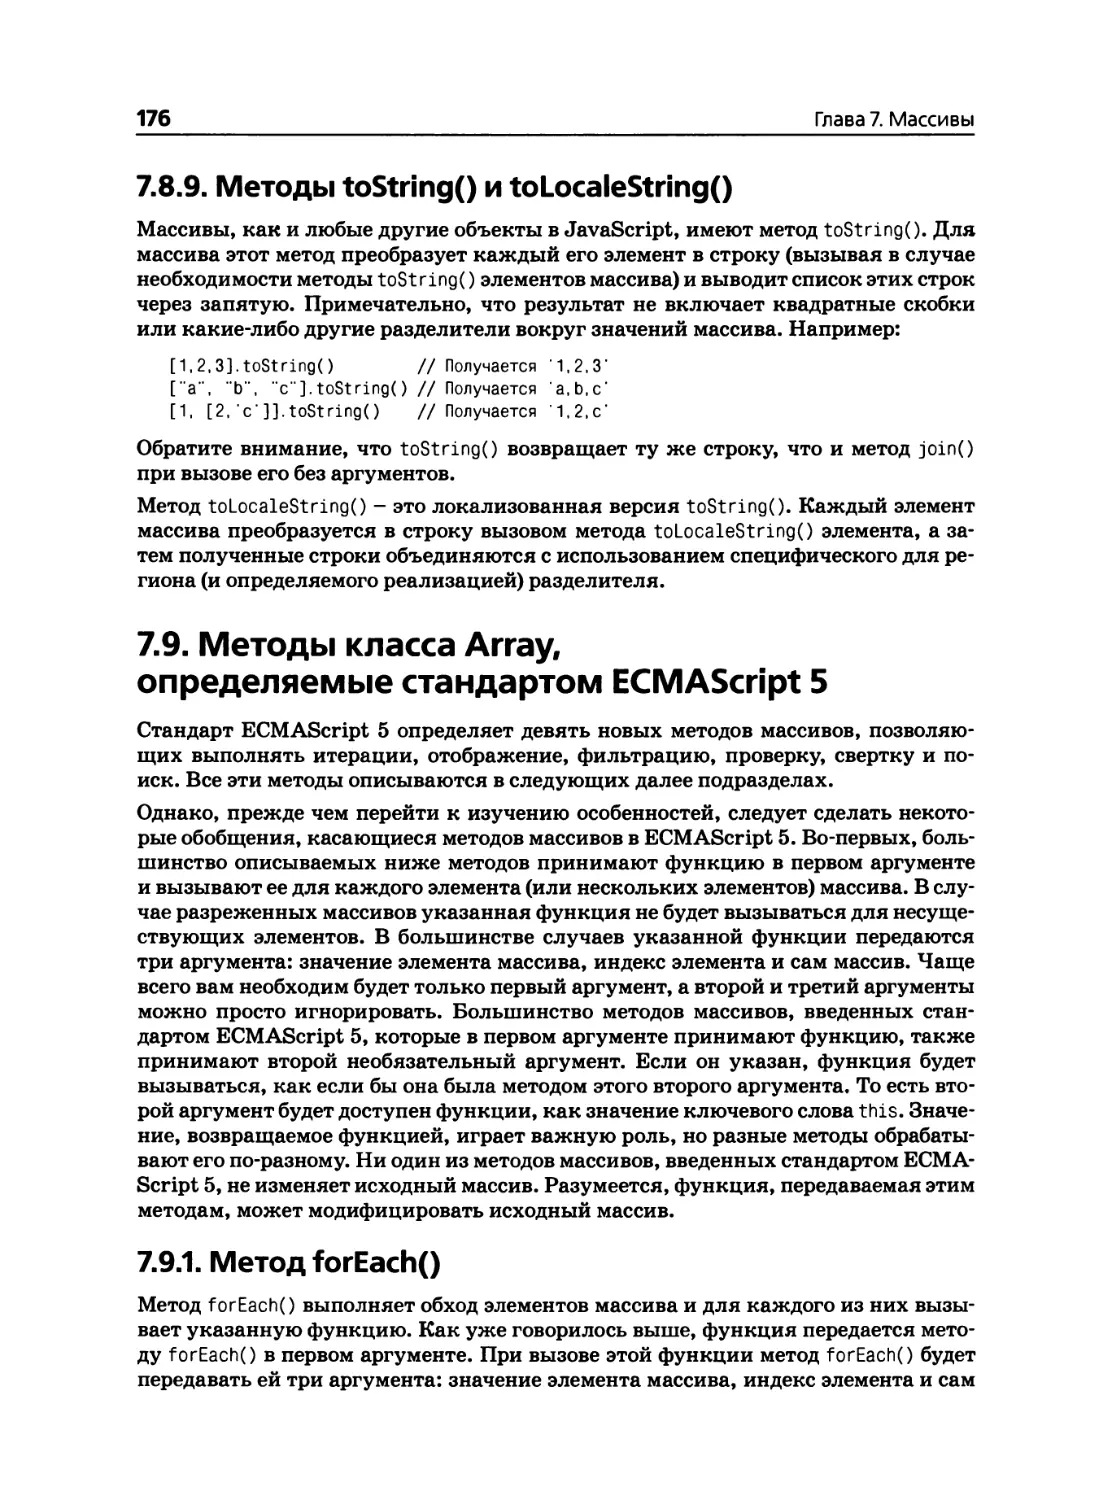 7.8.9. Методы toStringO и toLocaleStringO
7.9. Методы класса Array, определяемые стандартом ECMAScript 5